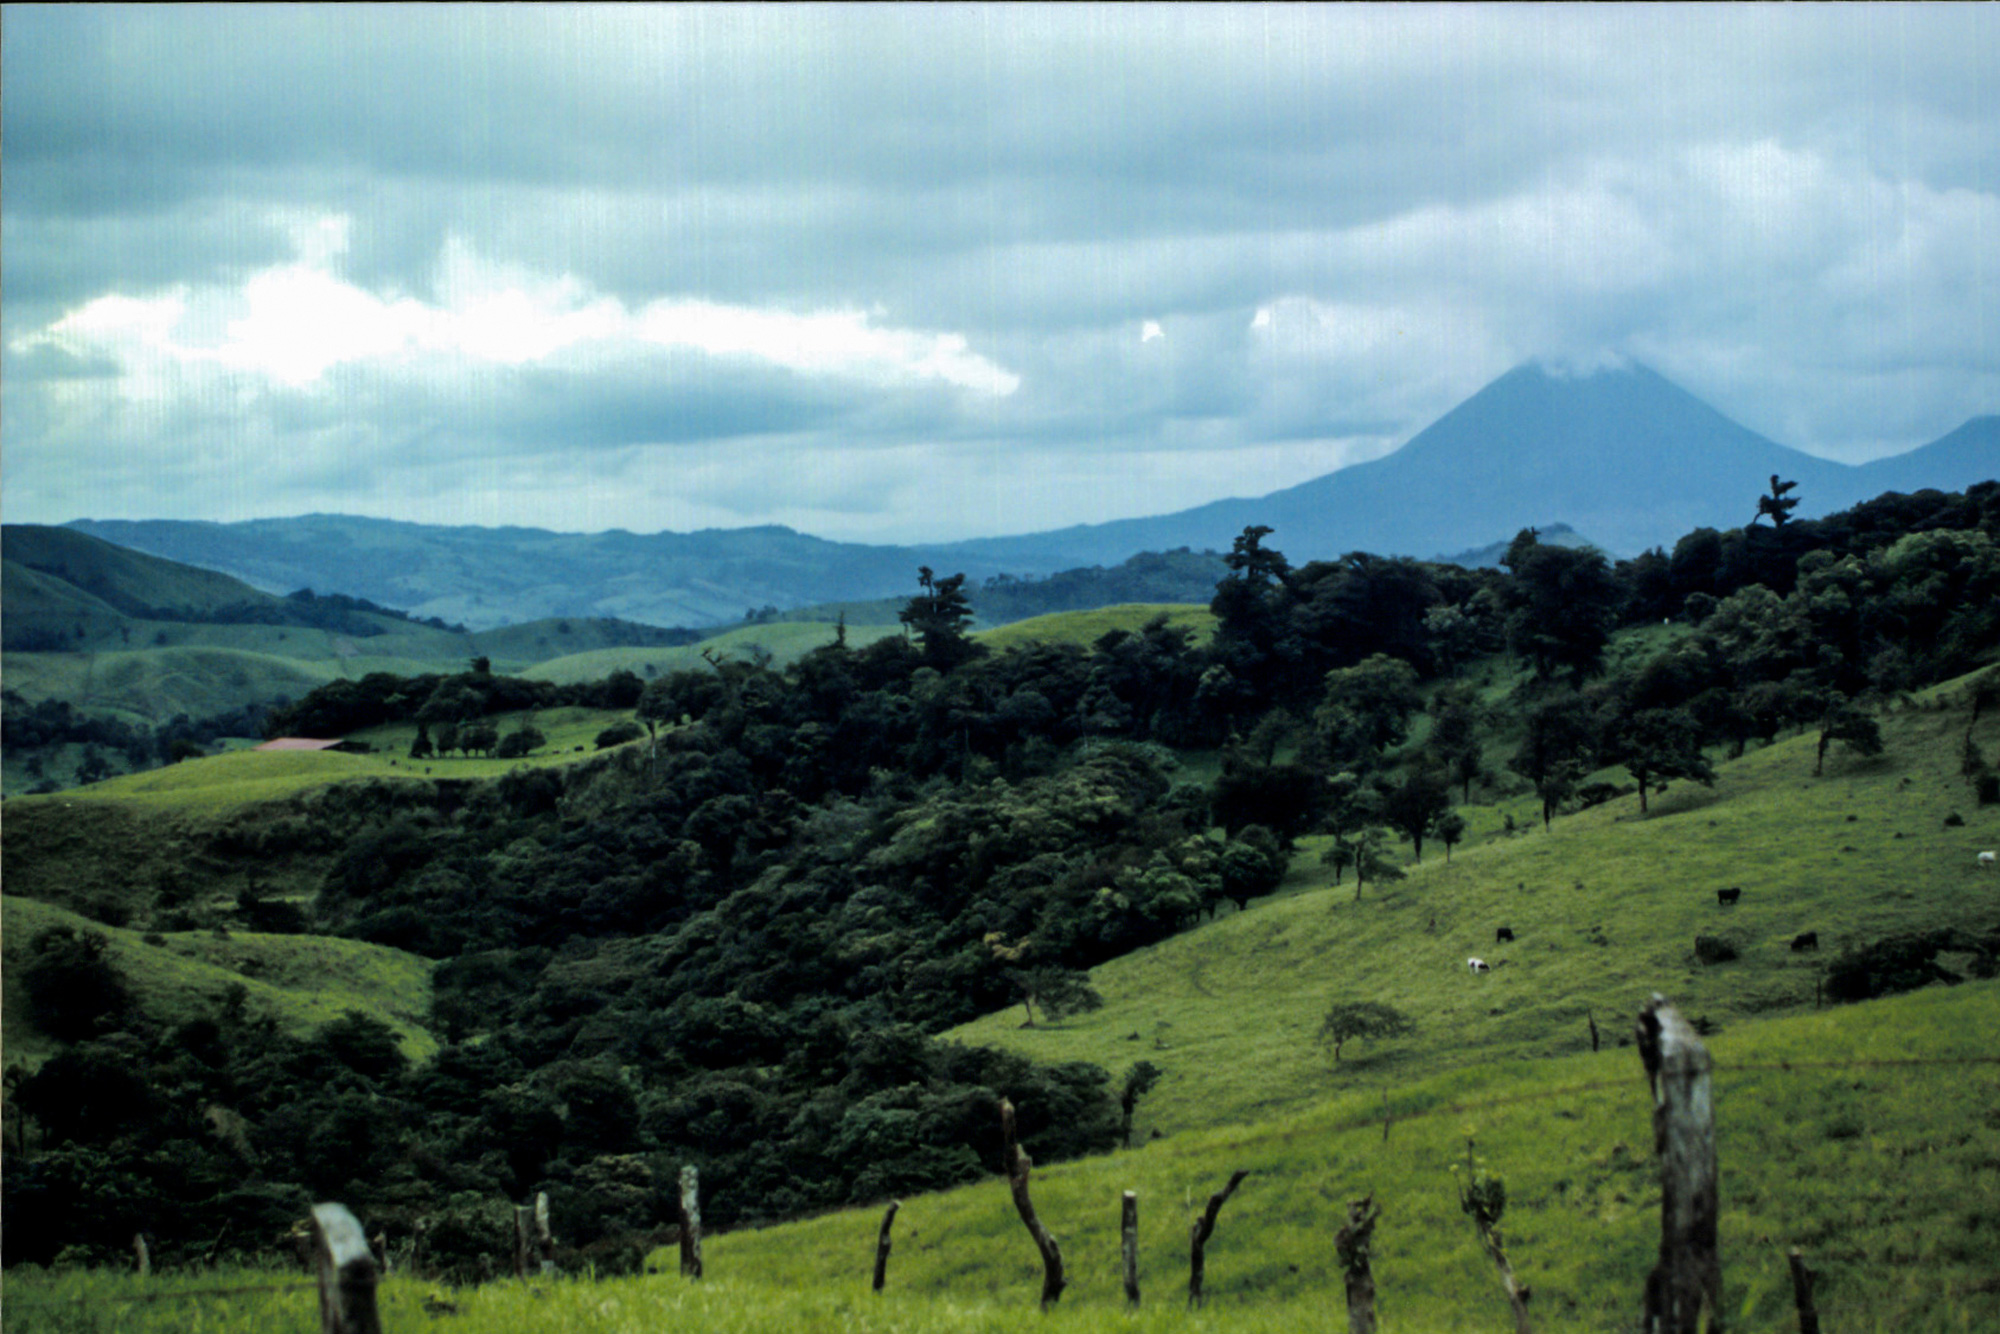 Central Costa Rica